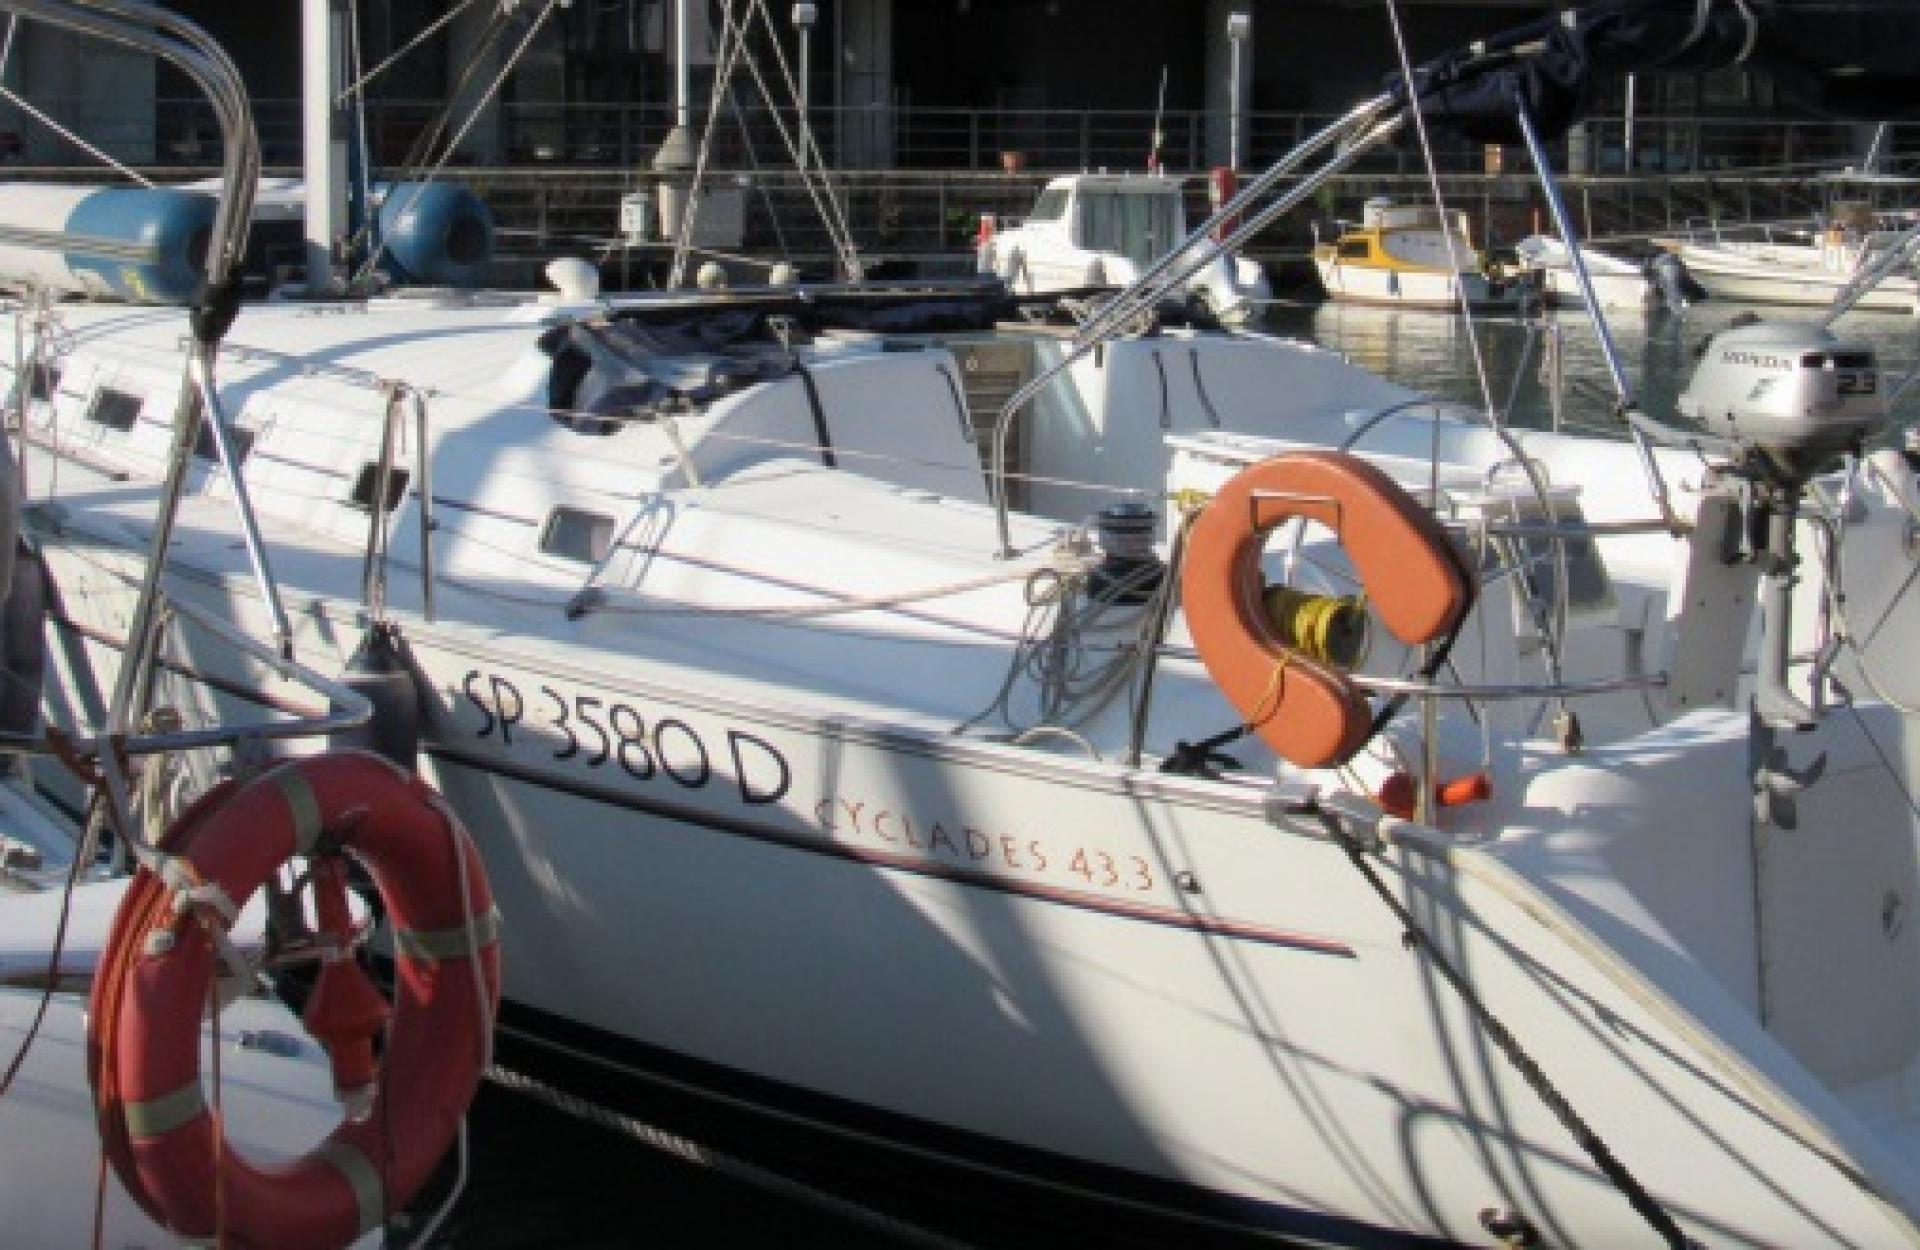 beneteau cyclades charter vela sail barca genova tigullio liguria skipper bareboat